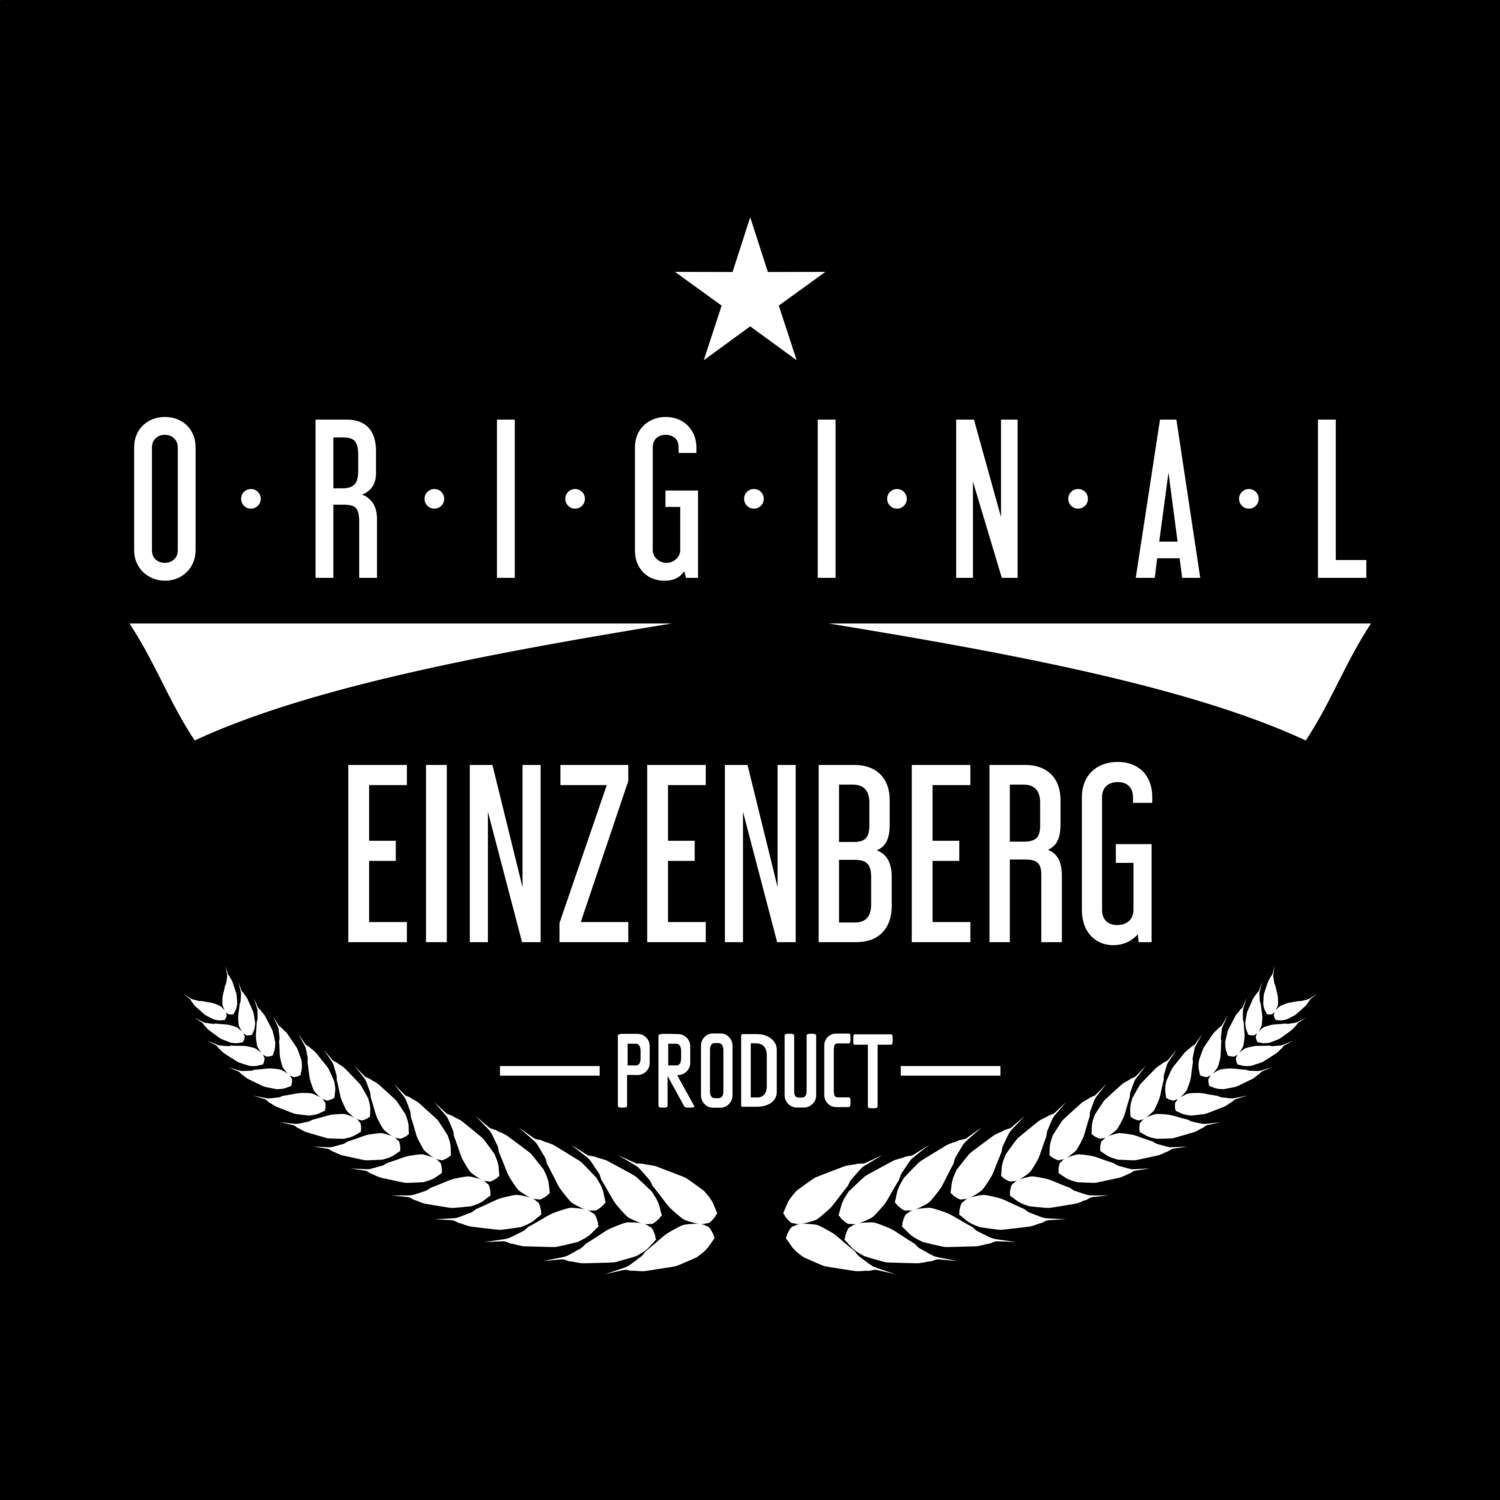 Einzenberg T-Shirt »Original Product«